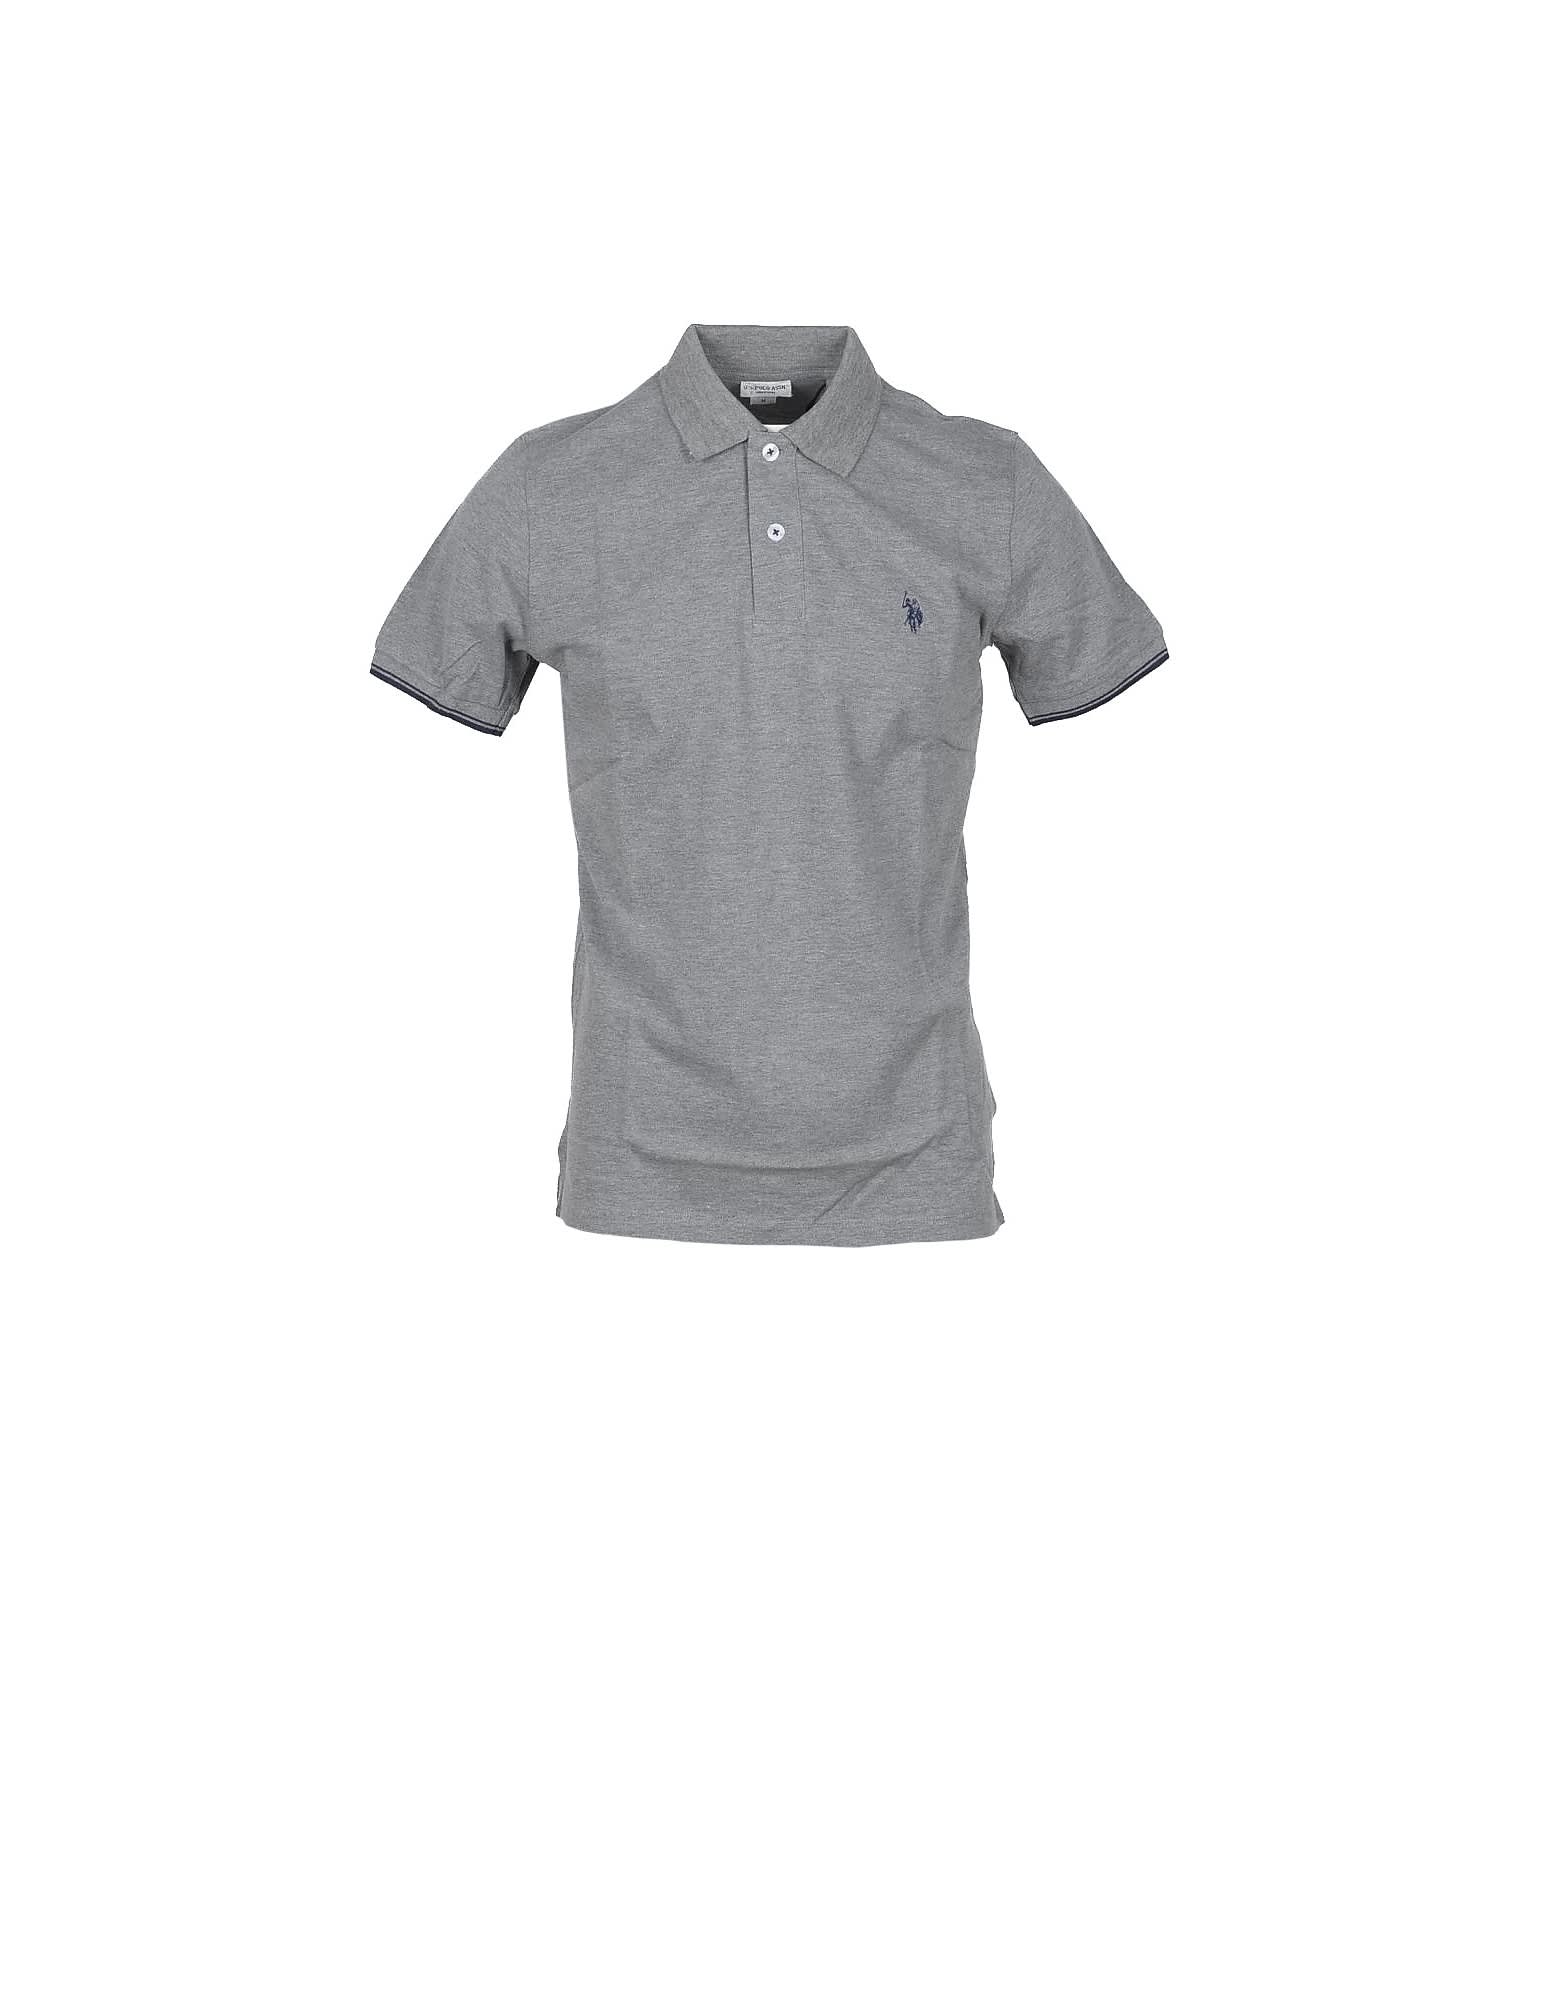 U.s. Polo Assn. Light Gray Piqué Cotton Mens Polo Shirt